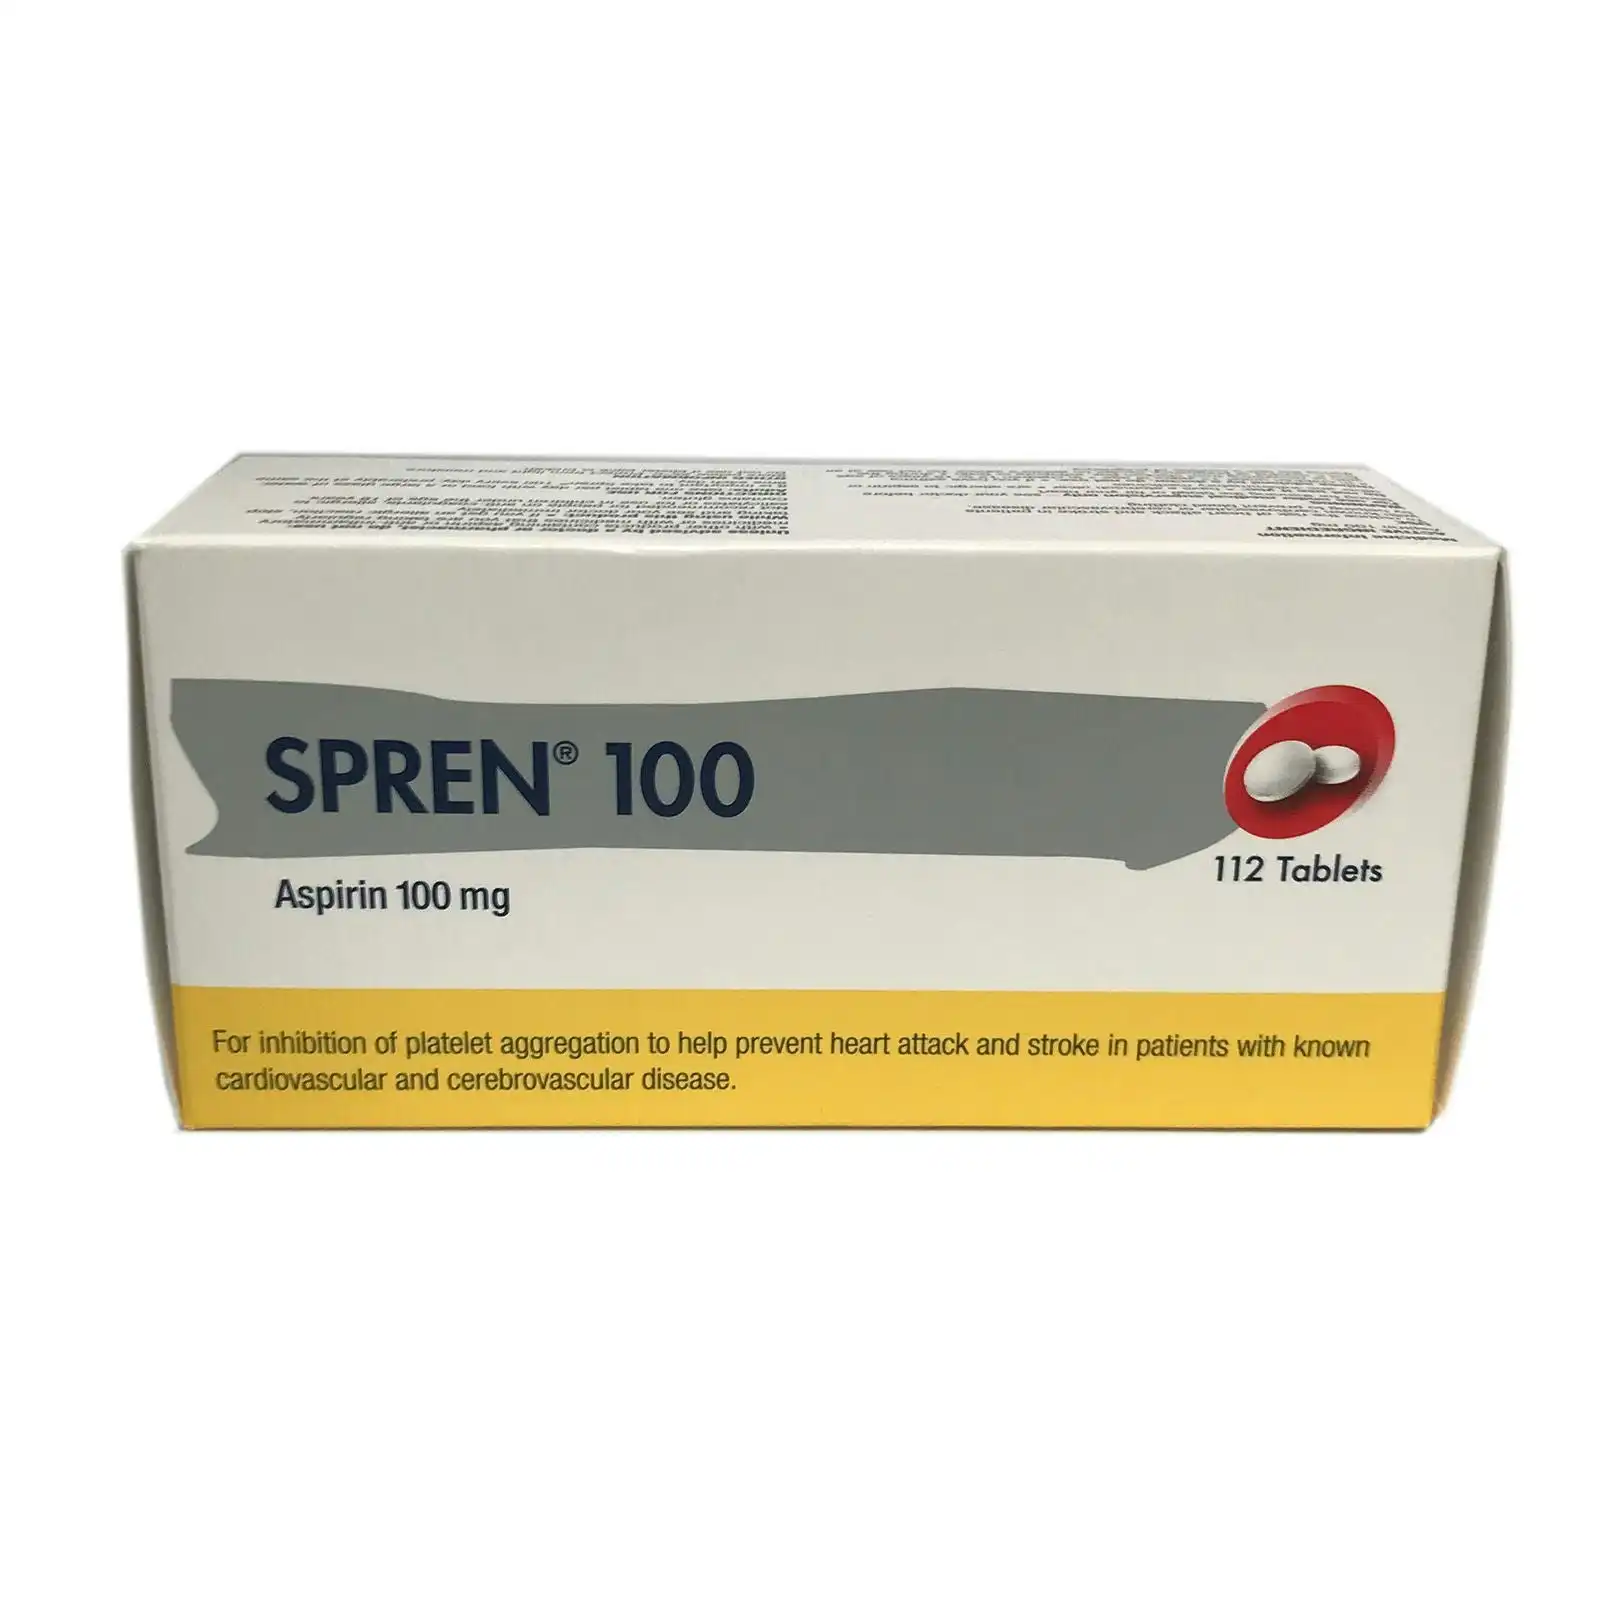 SPREN Aspirin 100mg 112 Tablets